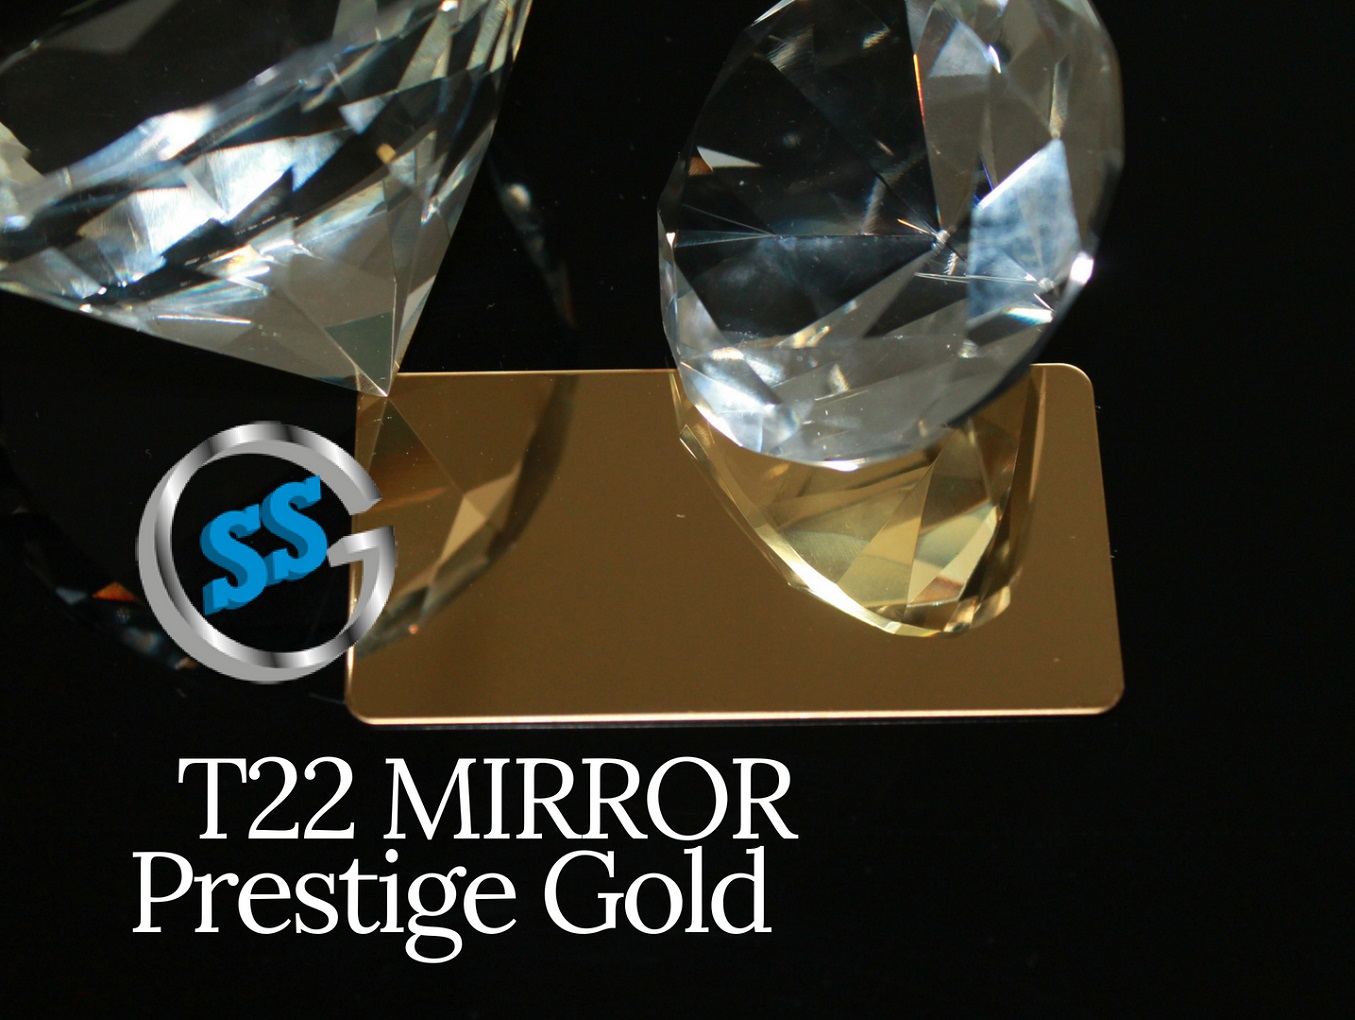 Inox T22 Titanium Prestige Gold Mirror, inox colorato titanio gold a specchio, inox oro